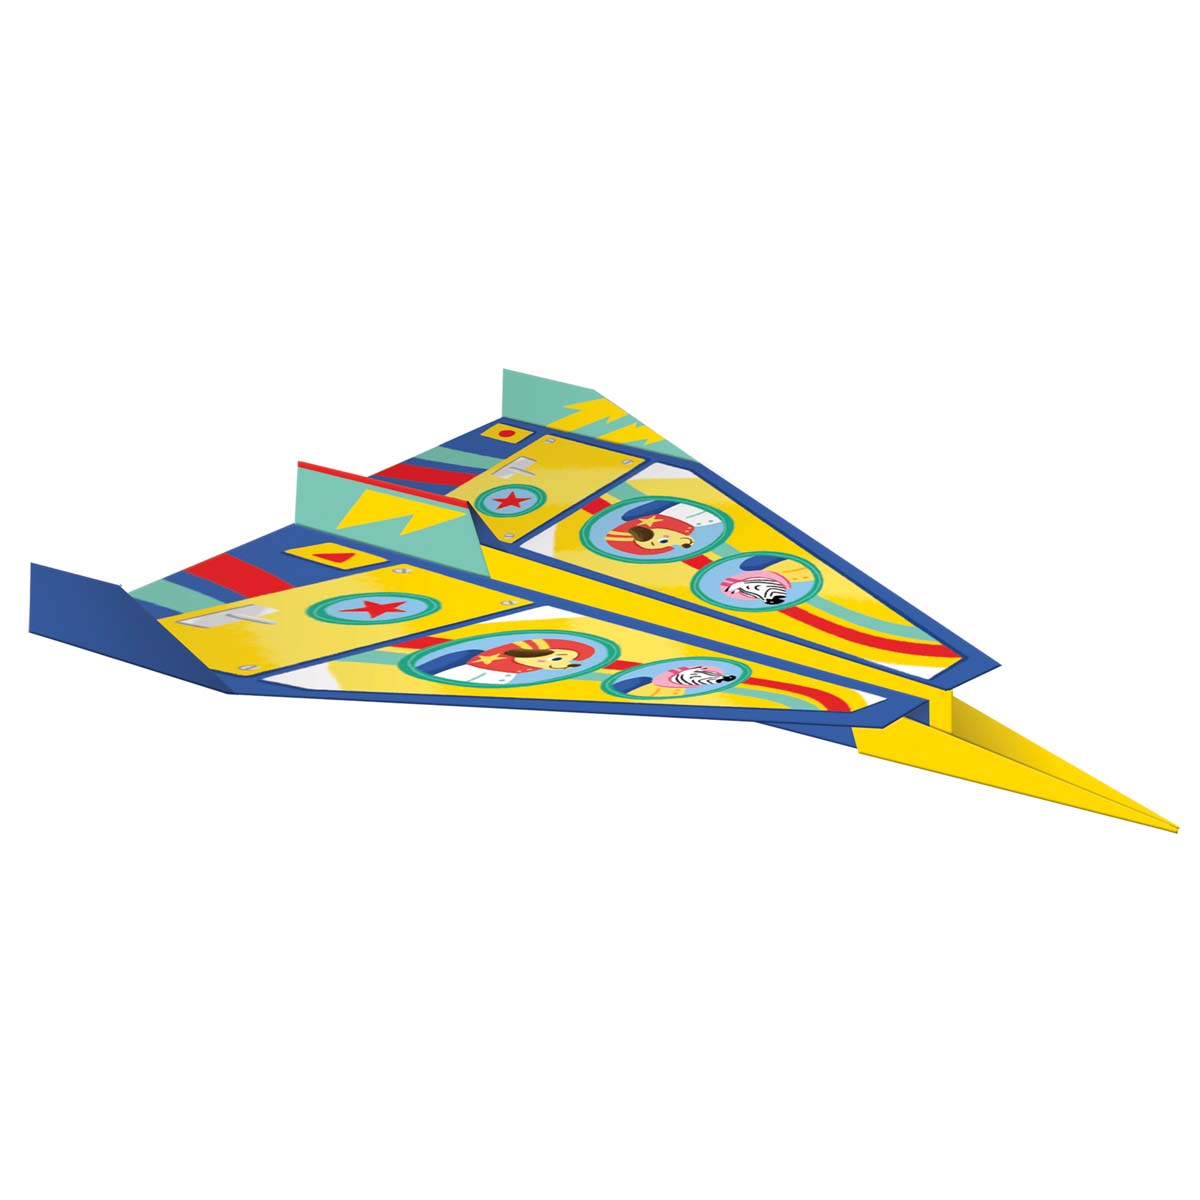 Met de atelier knutselset avonturen in de lucht van Janod kunnen kinderen vanaf 7 jaar 13 creaties maken d.m.v. origami, modelbouw, stickers, diamond painting, mozaïek of zand, VanZus  